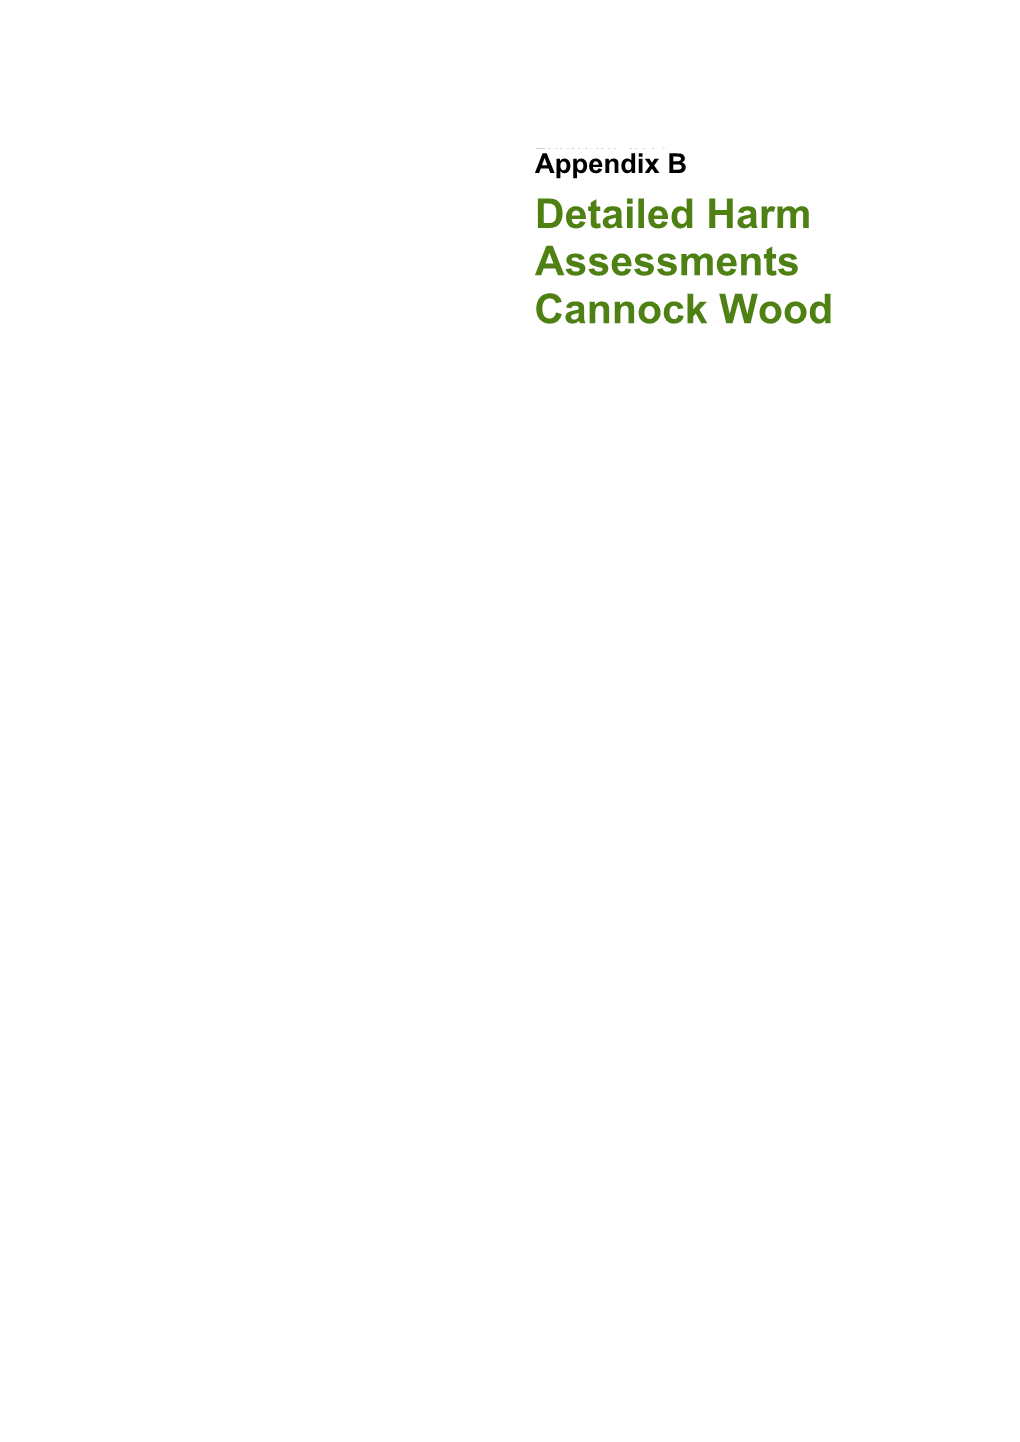 Green Belt Study Report (March 2021) Appendix B Cannock Wood